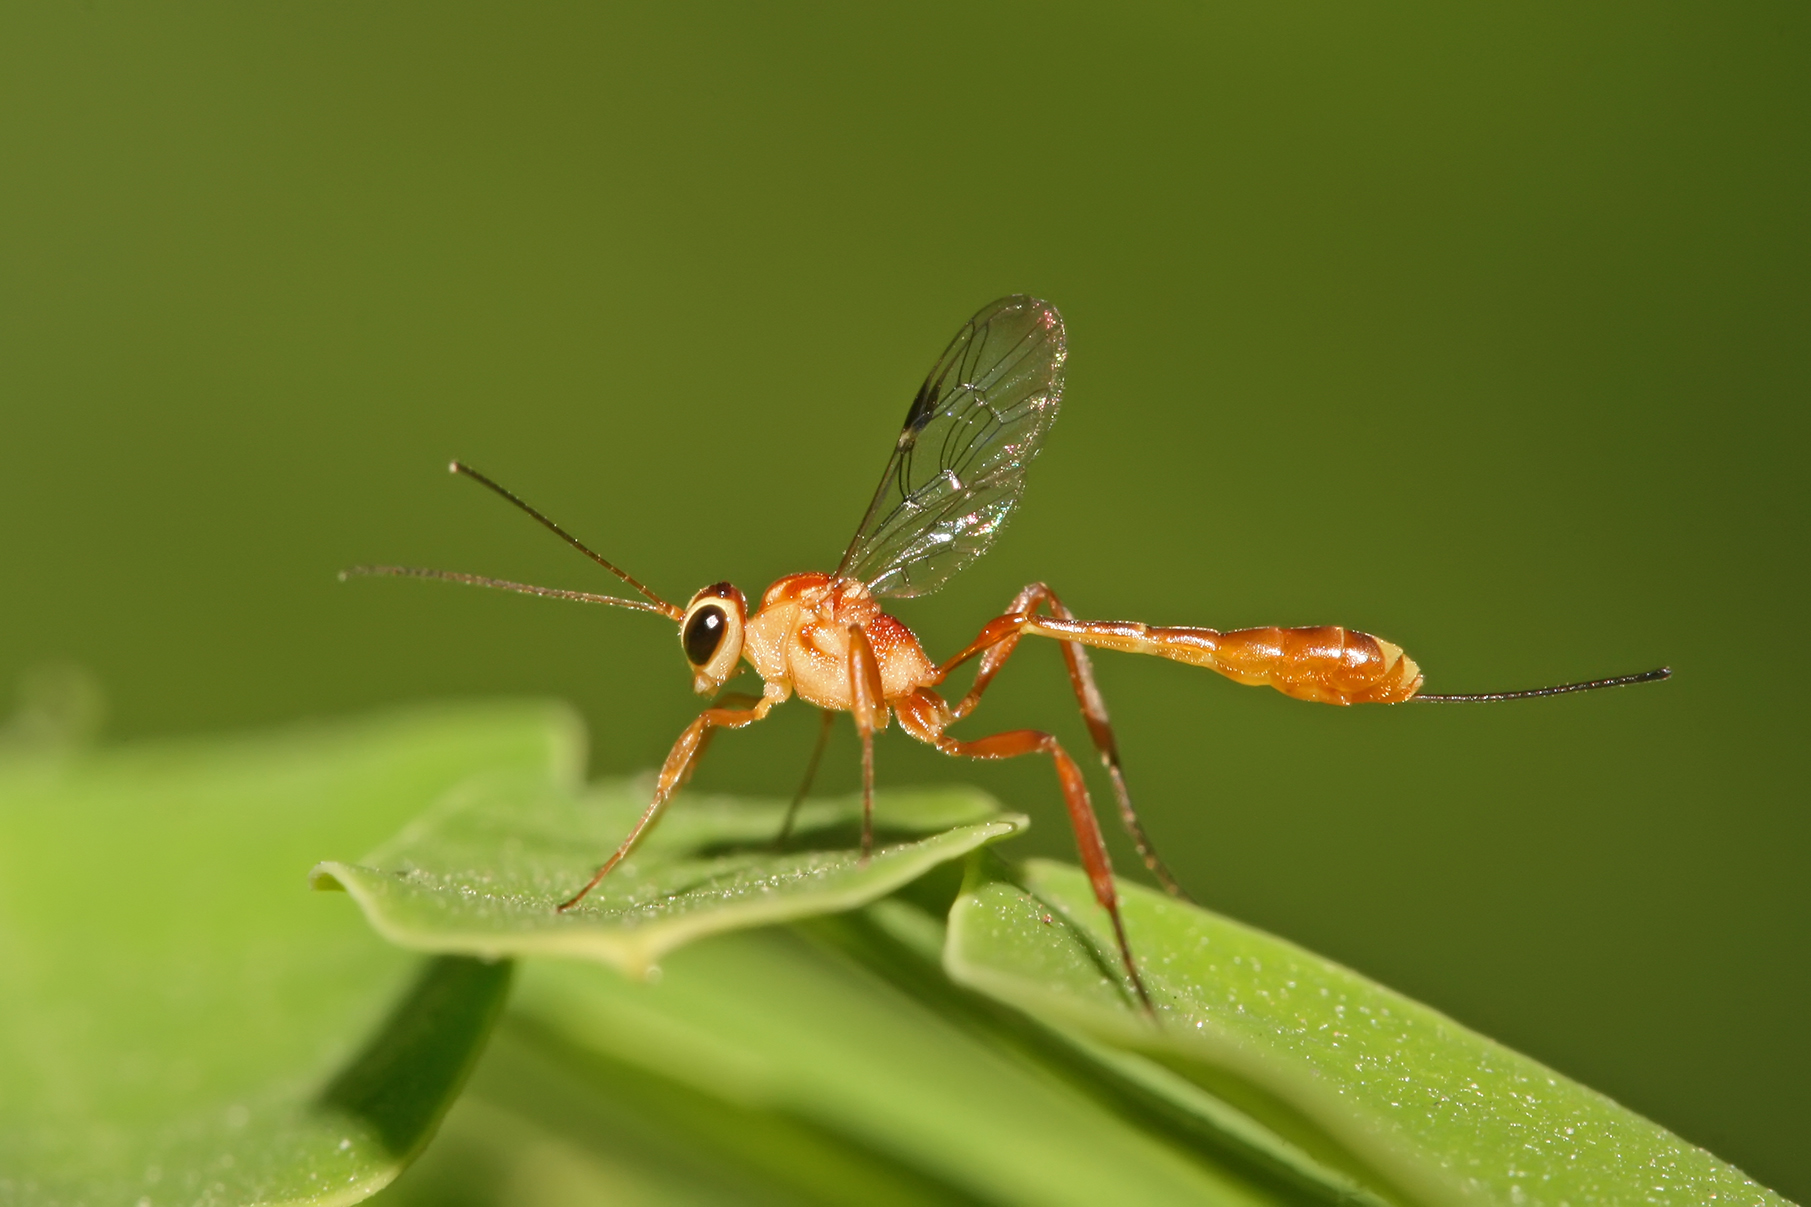 Wasp Picture by Muhammad Mahdi Karim